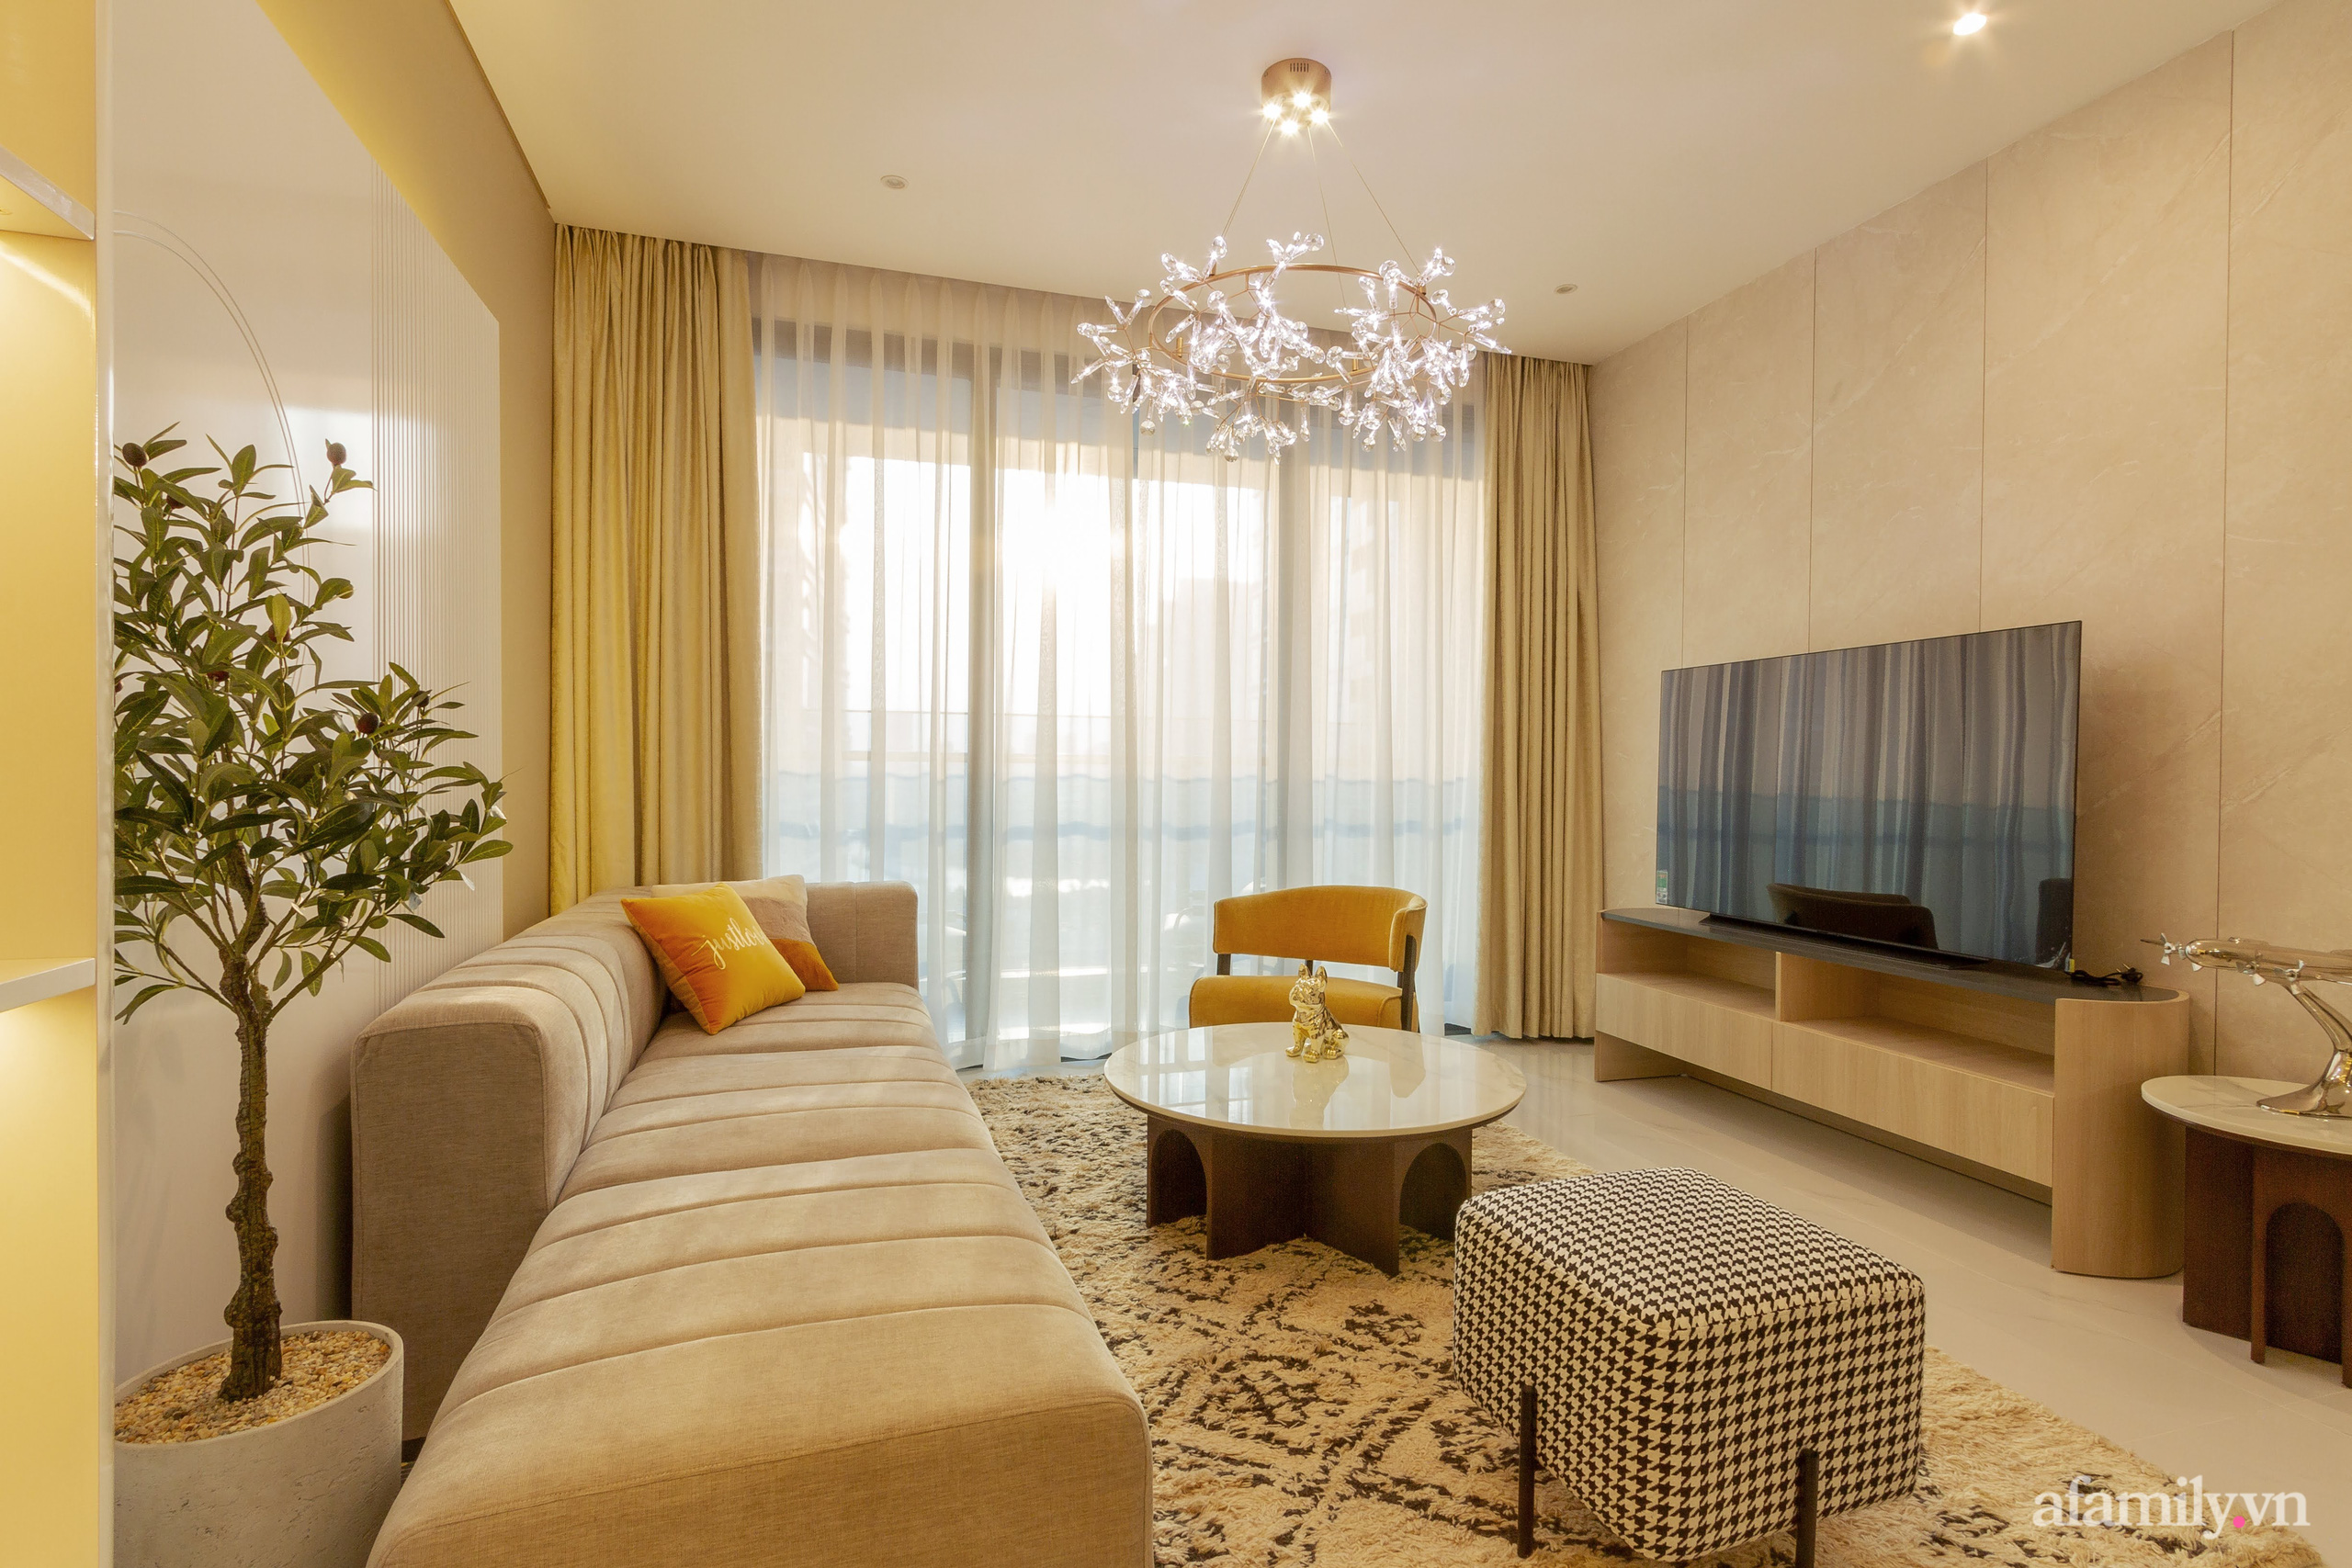 Căn hộ 120m² đẹp tinh tế với sắc màu mùa xuân với chi phí hoàn thiện 750 triệu đồng ở Sài Gòn - Ảnh 3.